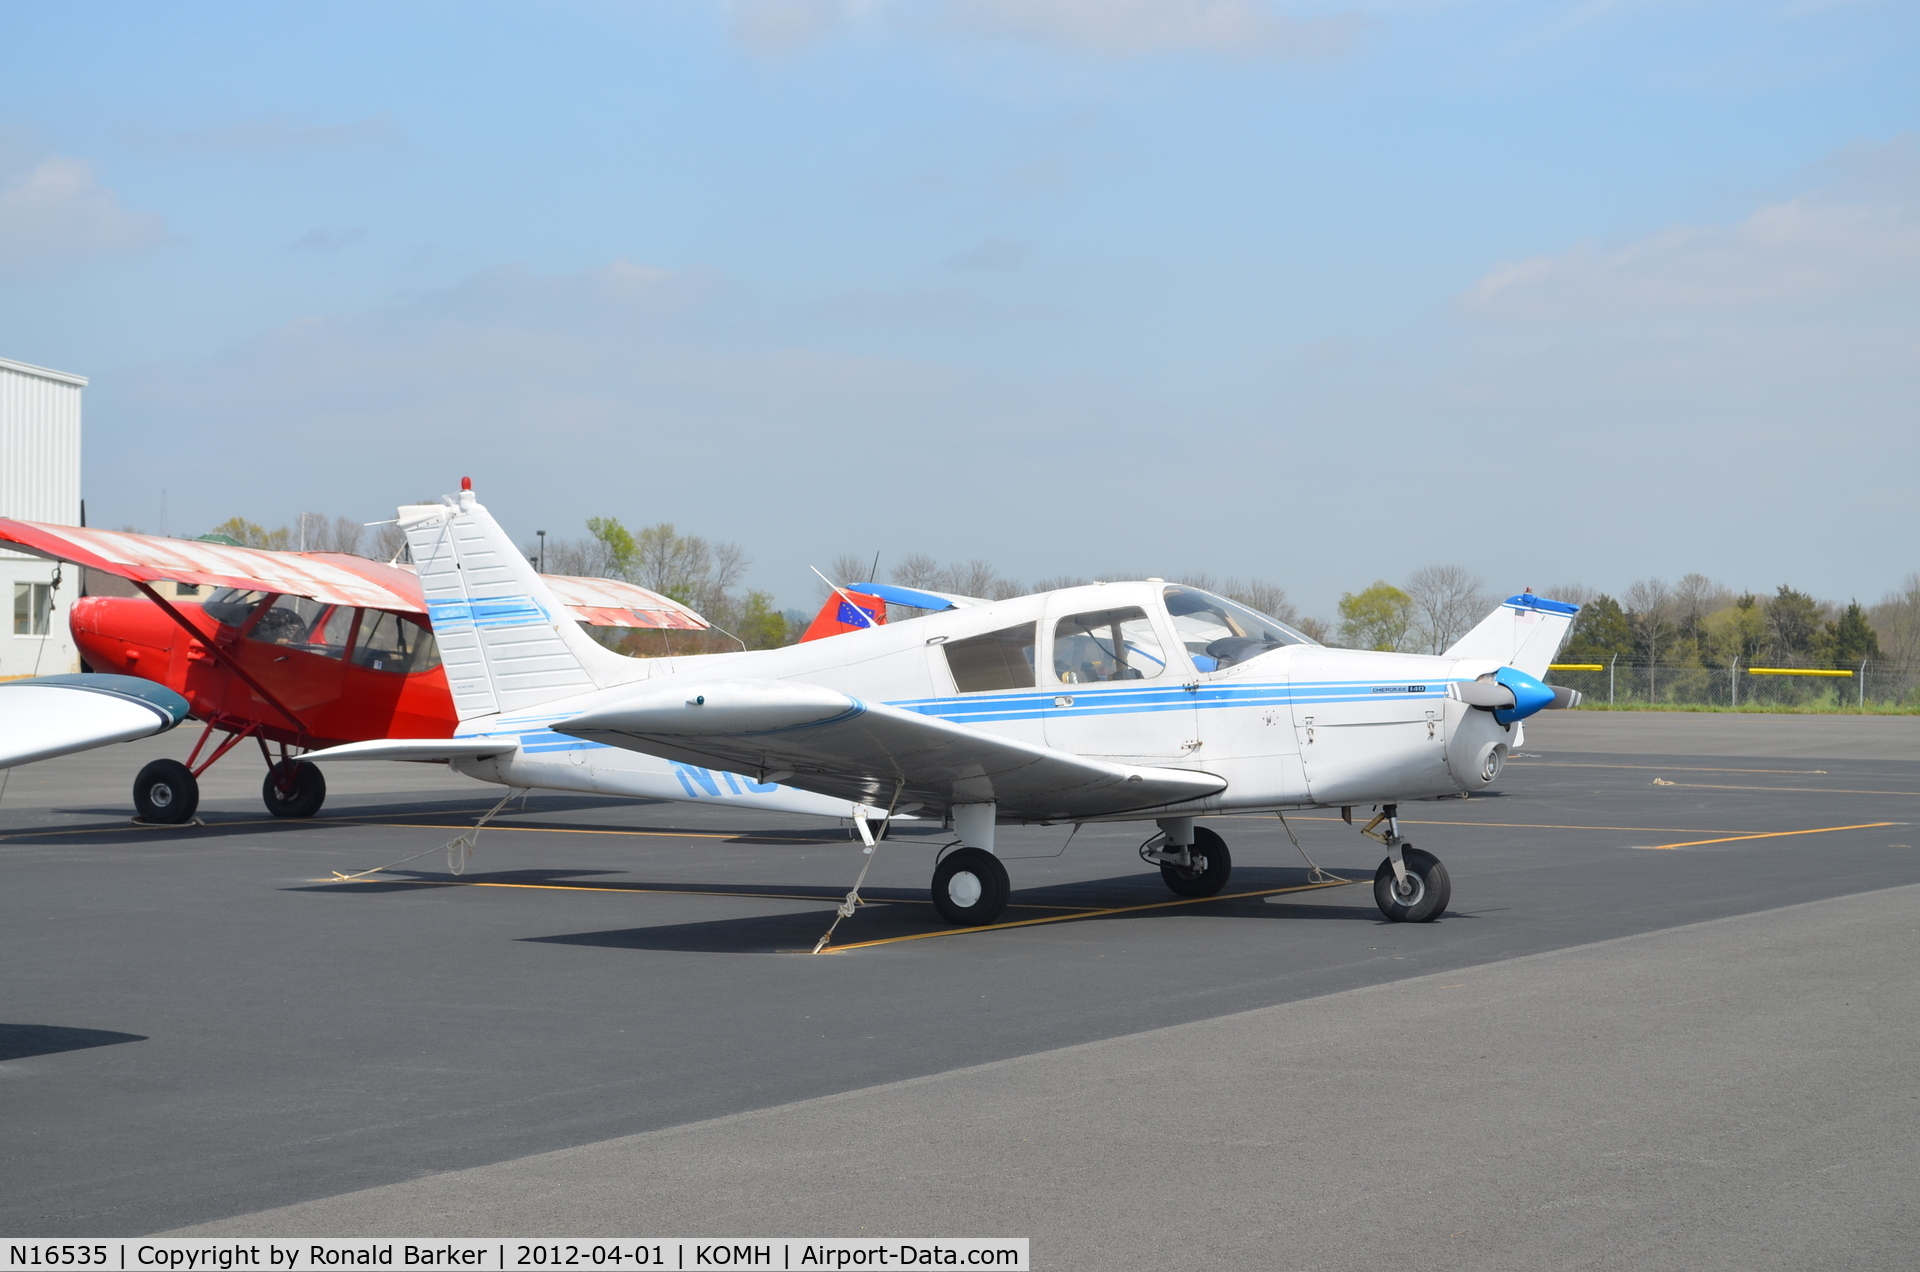 N16535, 1973 Piper PA-28-140 C/N 28-7325293, Orange